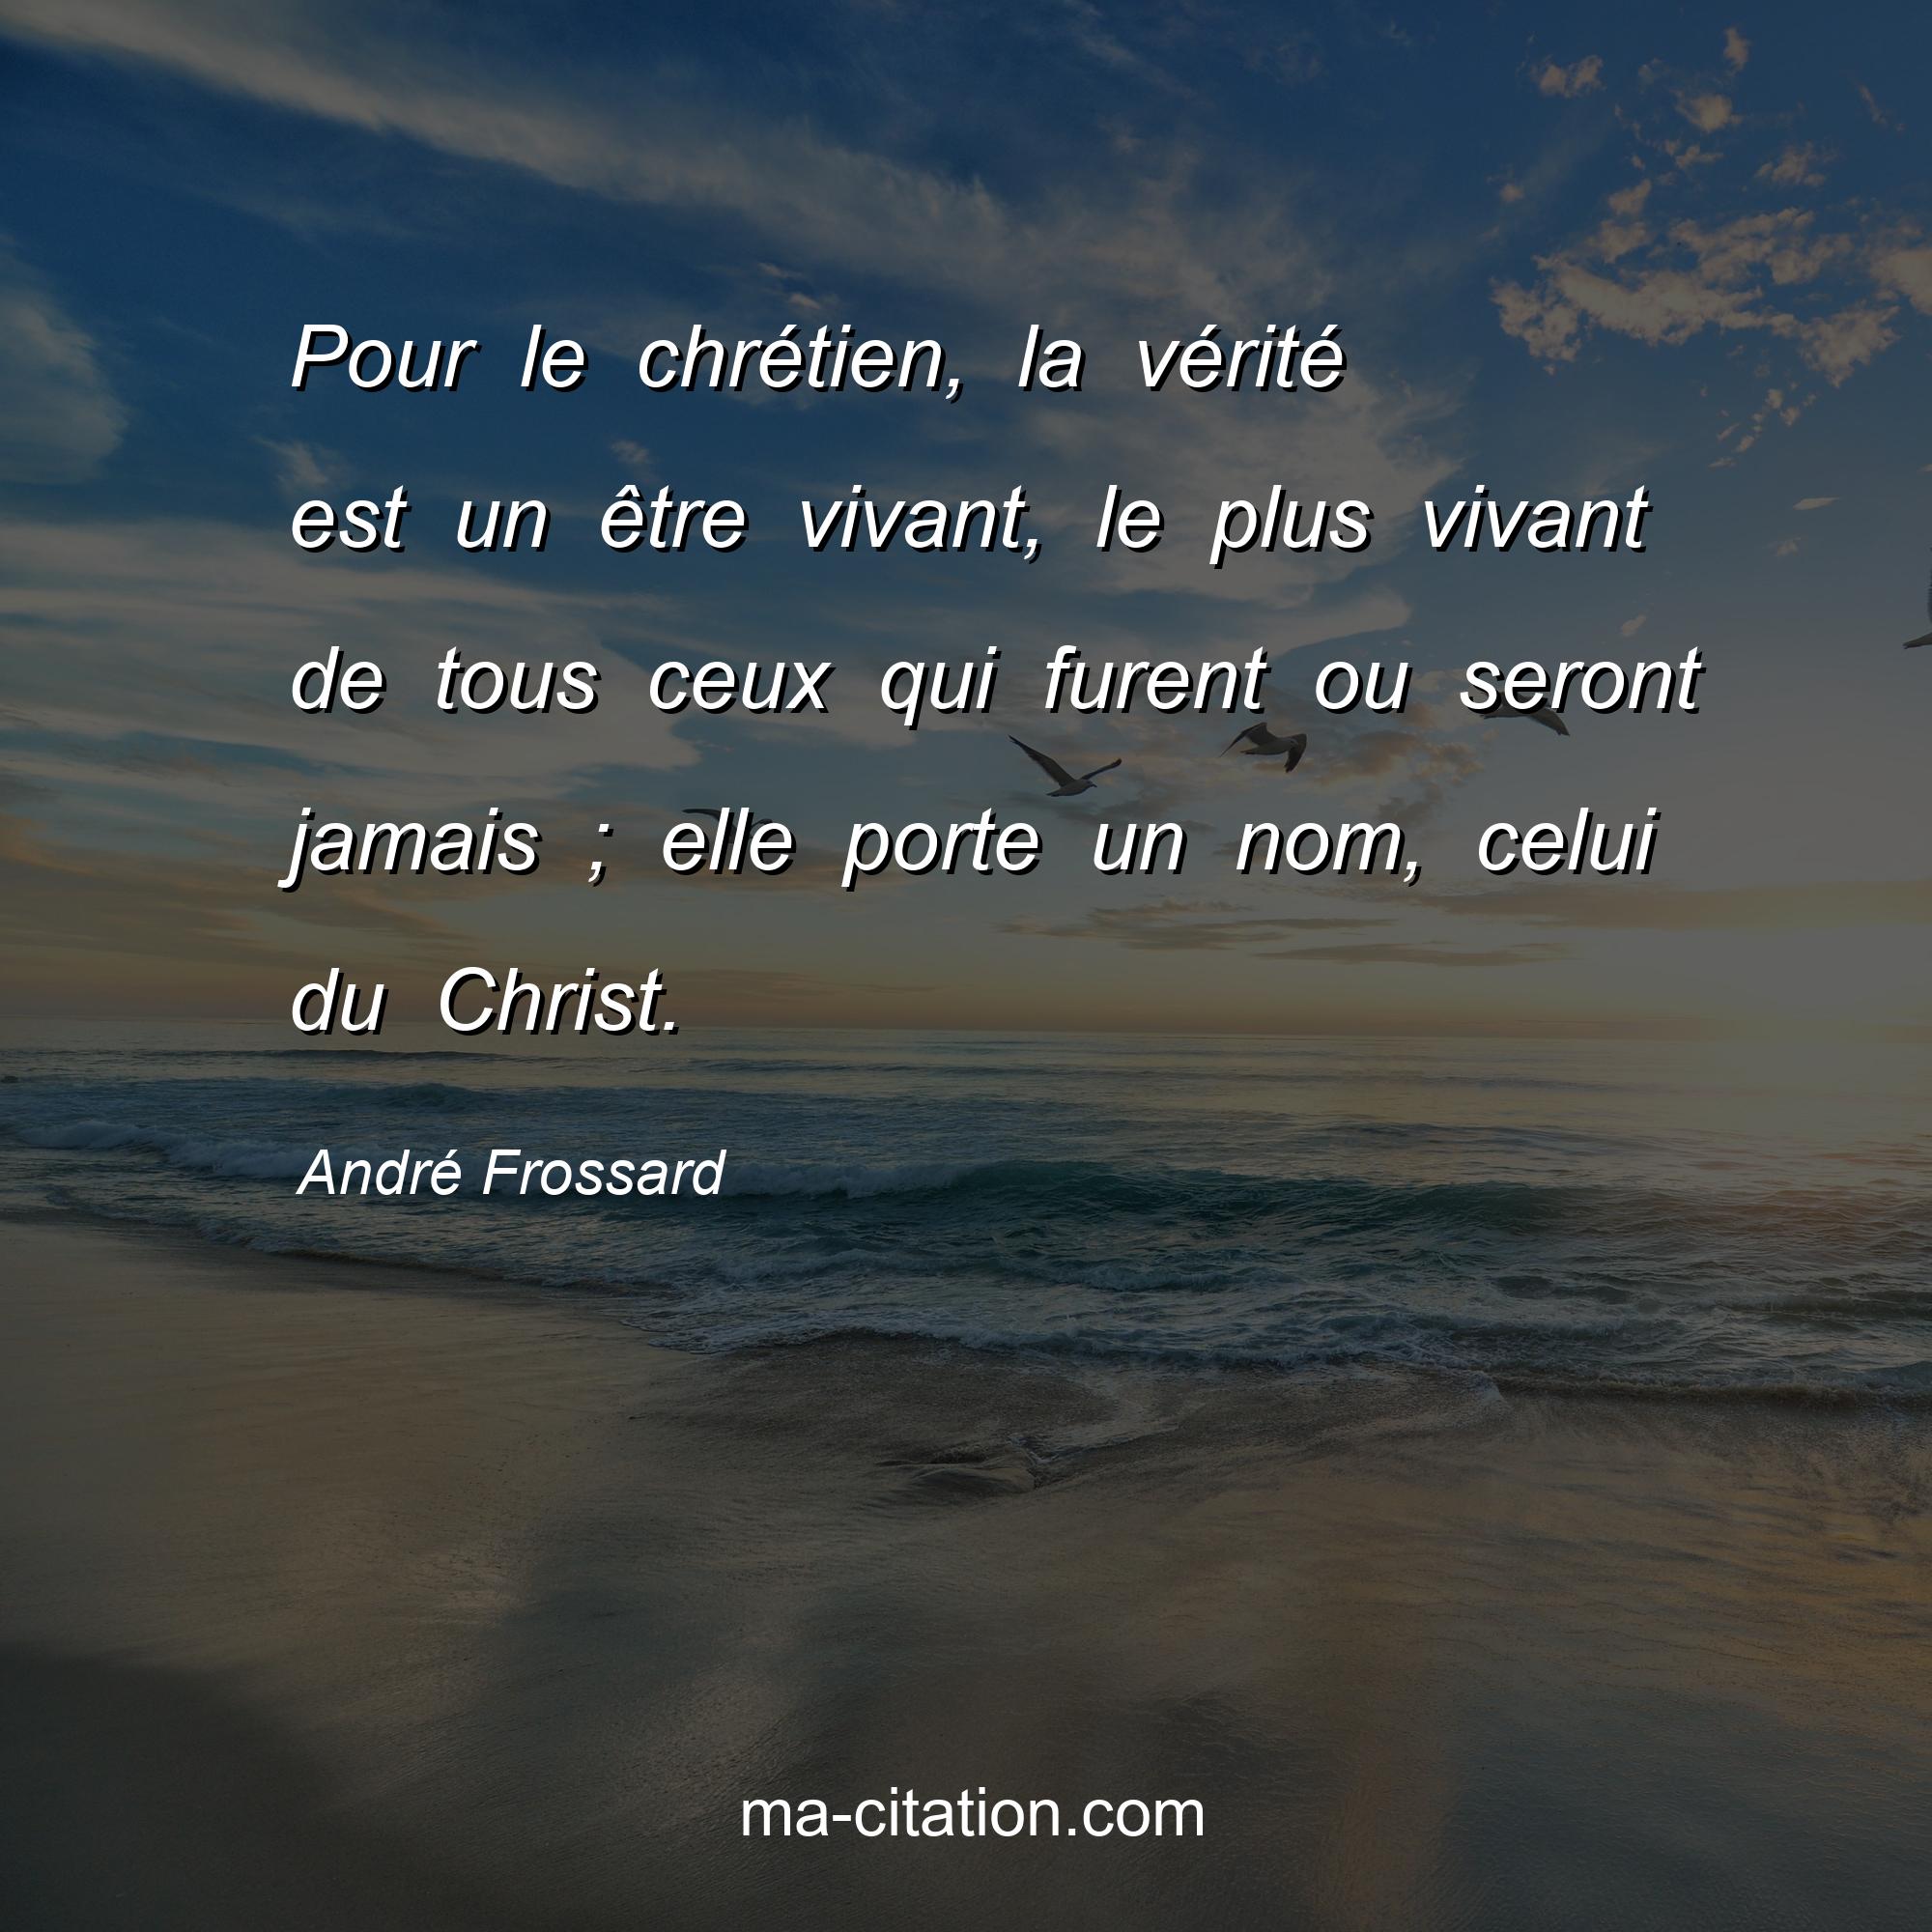 André Frossard : Pour le chrétien, la vérité est un être vivant, le plus vivant de tous ceux qui furent ou seront jamais ; elle porte un nom, celui du Christ.